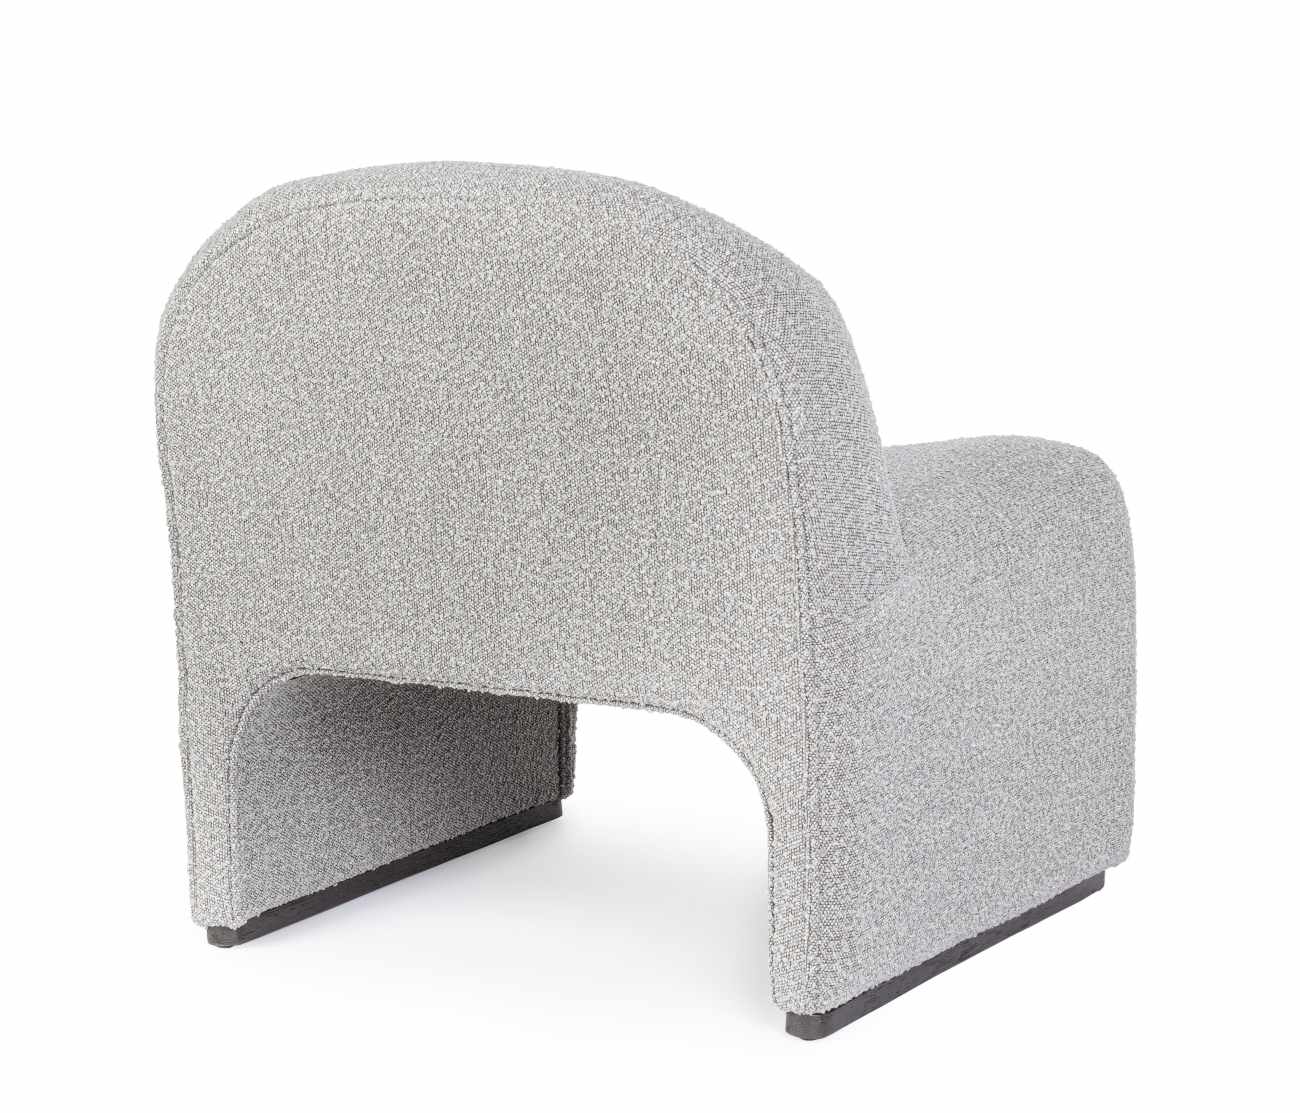 Der Sessel Bassilla überzeugt mit seinem modernen Stil. Gefertigt wurde er aus Boucle-Stoff, welcher einen grauen Farbton besitzt. Der Sessel besitzt eine Sitzhöhe von 42 cm.